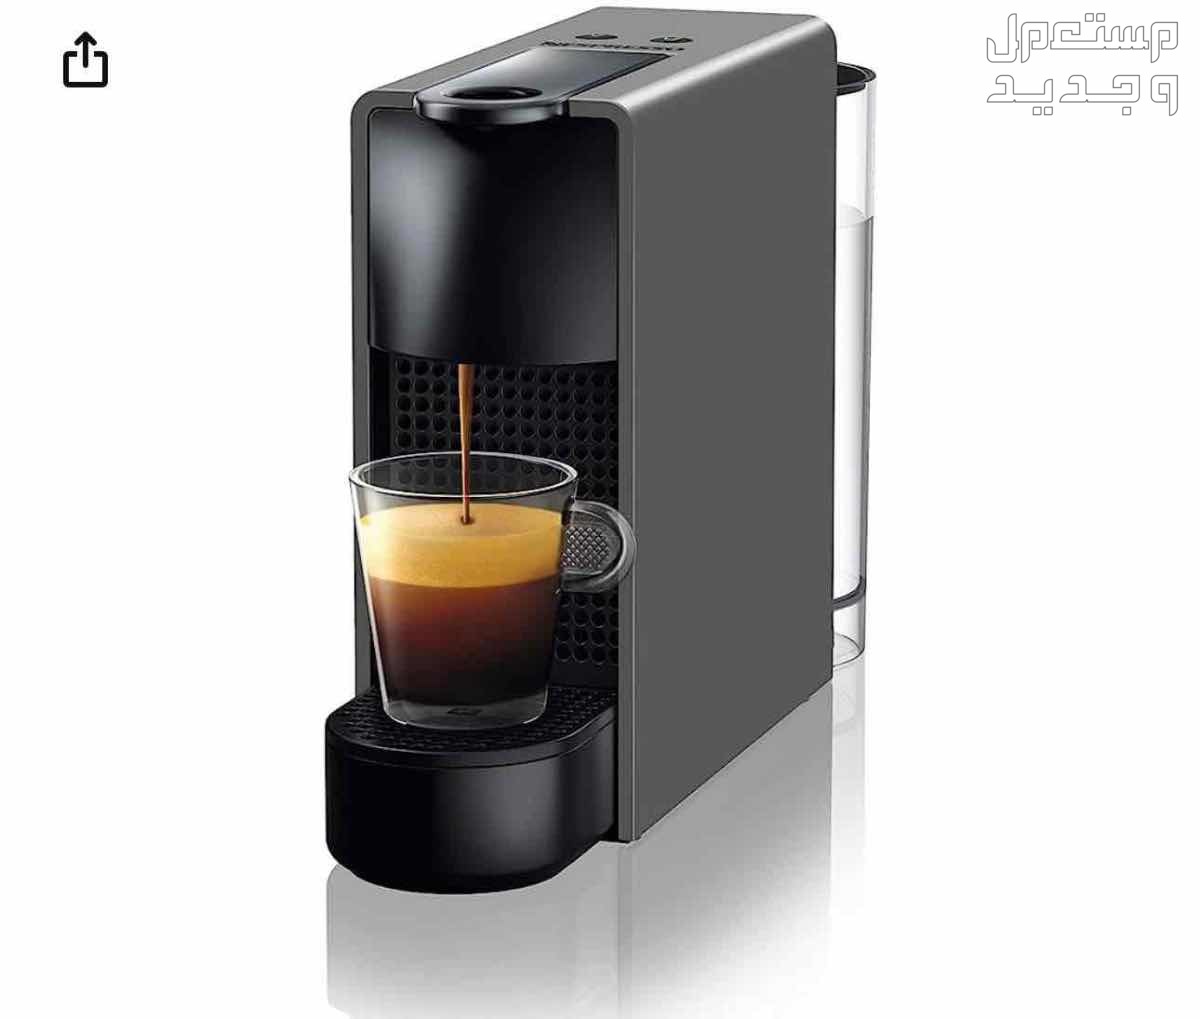 ماكينة صغيرة لتحضير القهوة من نسبريسو، سعة 0.6 لتر، عالية الاداء بضغط 19 بار، موديل C030GR، بلاستيك، اسود